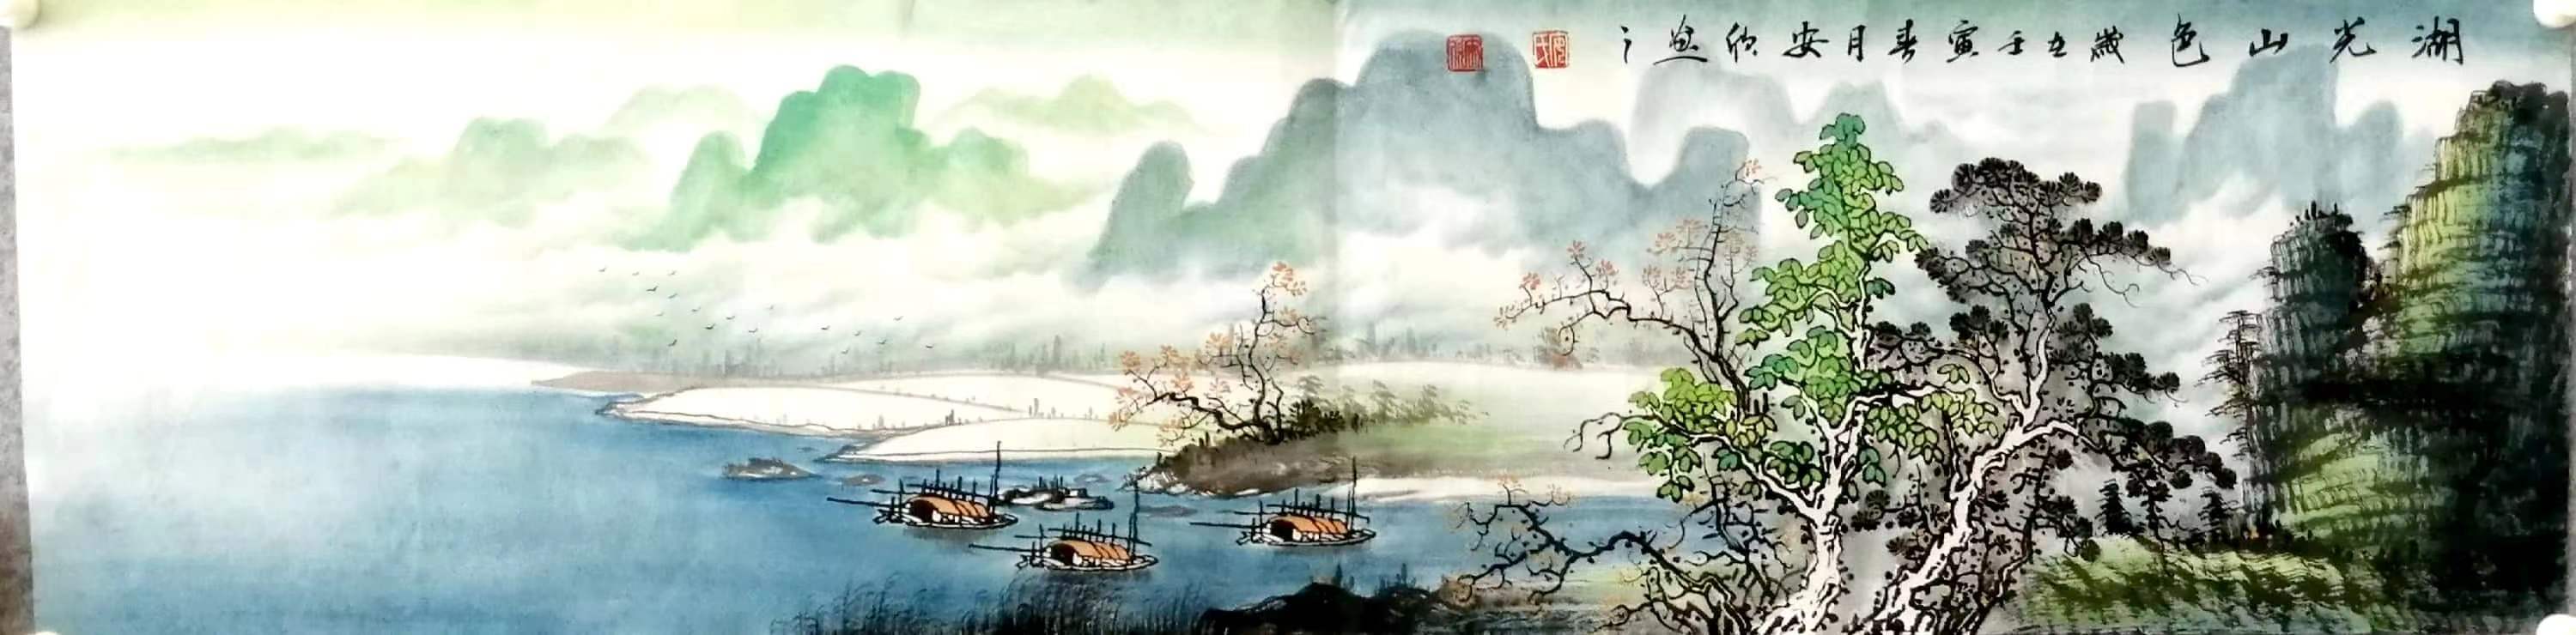 中國山水畫畫家排行_高云鵬:被譽為最值得市場關注的青年畫家,畫風氣勢磅礴